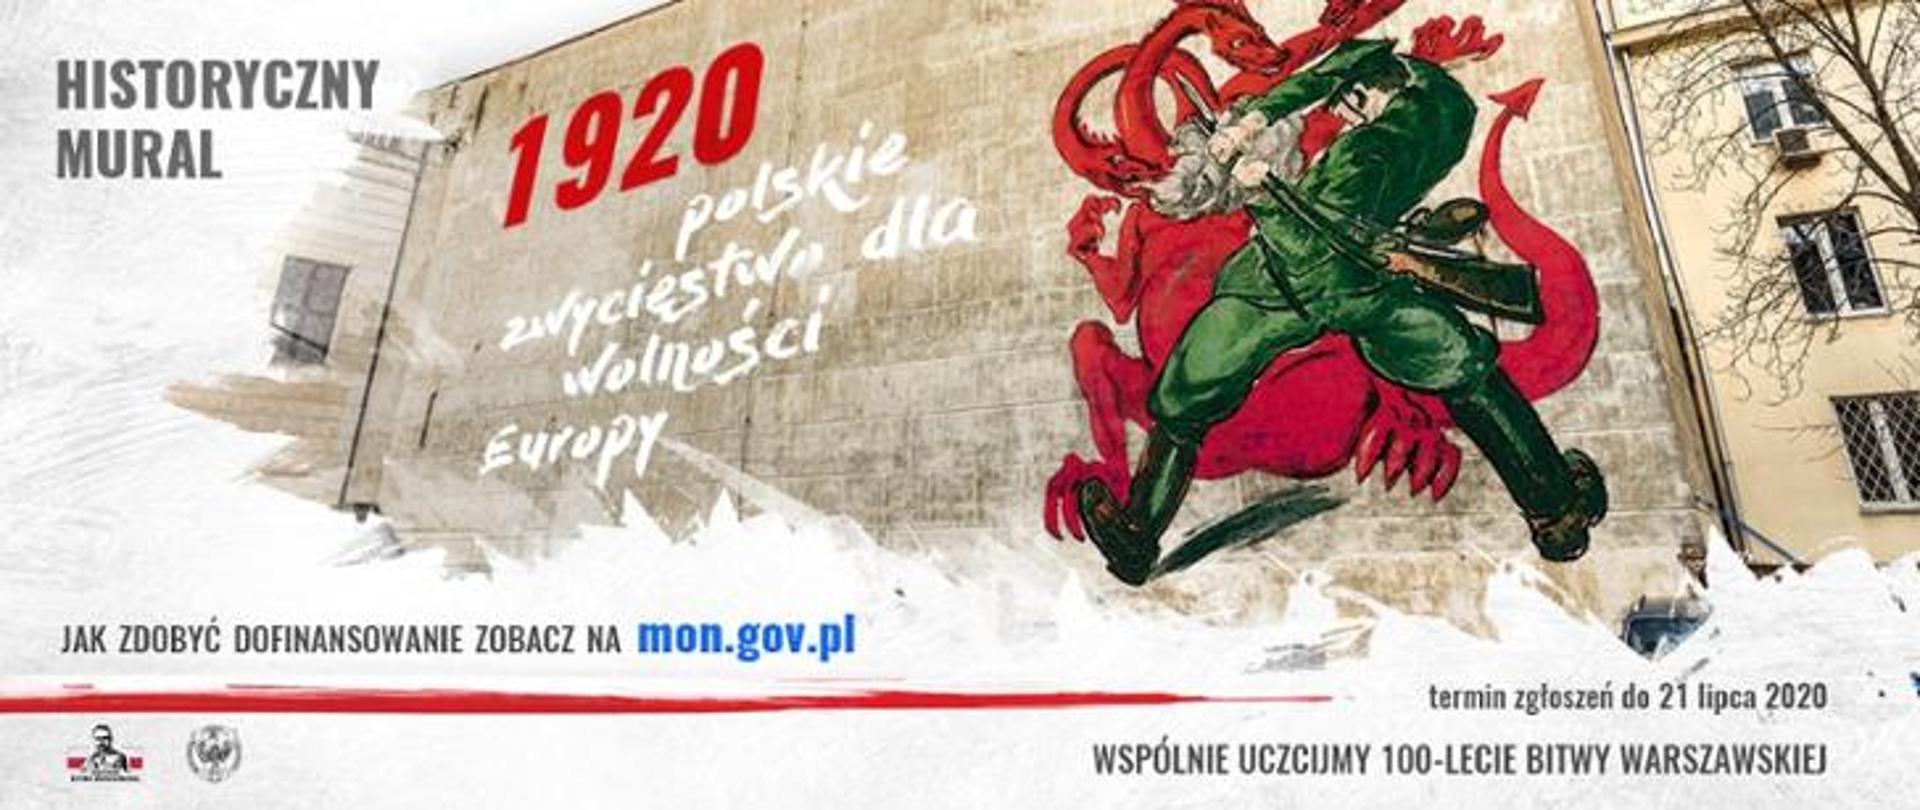 Ministerstwo Obrony Narodowej ogłosiło konkurs pn. Historyczny Mural - 1920 polskie zwycięstwo dla wolności Europy.